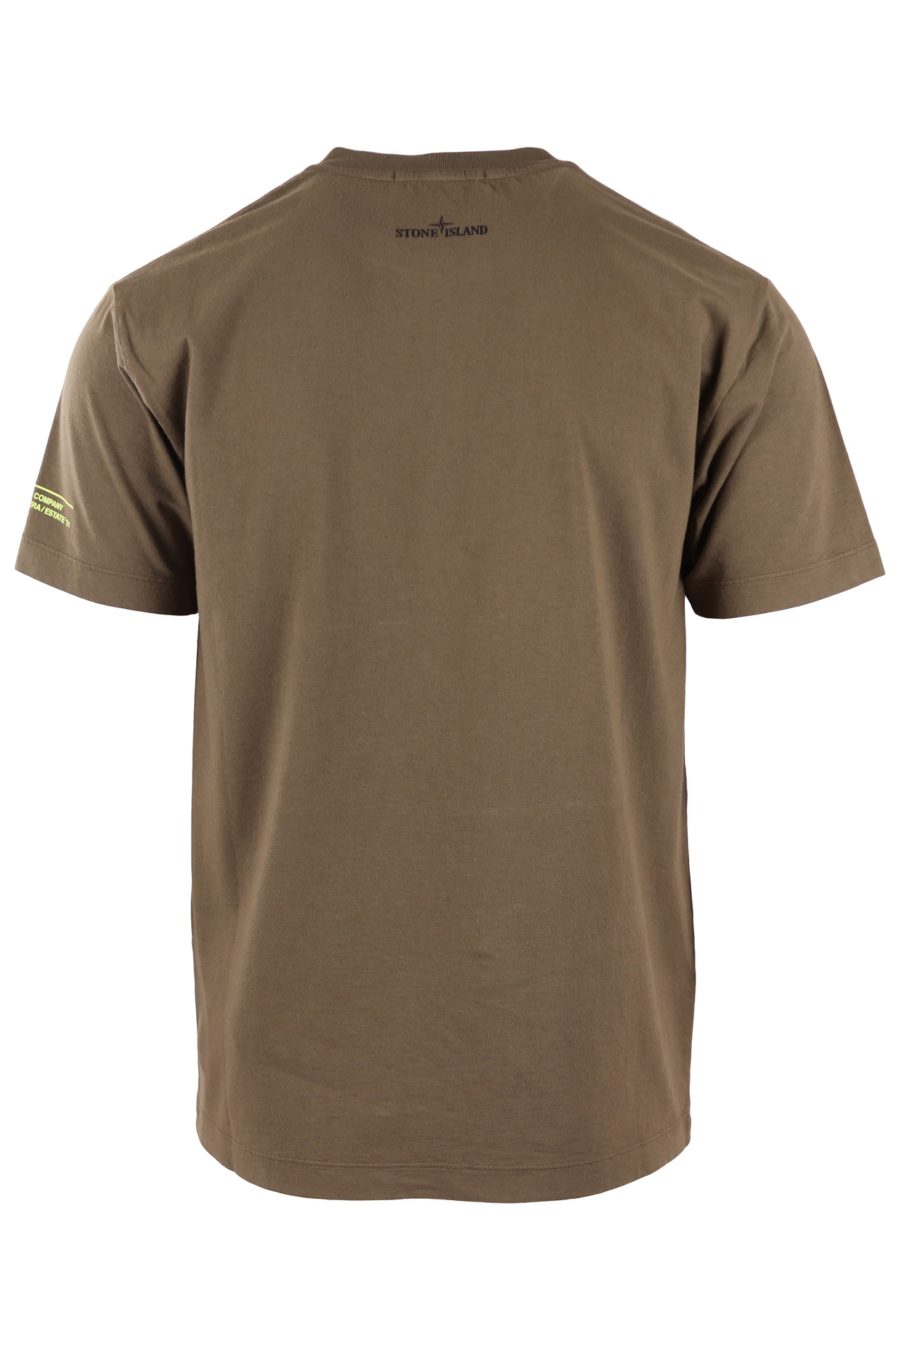 Stone Island militärgrünes T-Shirt mit Logodruck - b68317dc8c648ea88ca5c2c26d824a7788e8d956